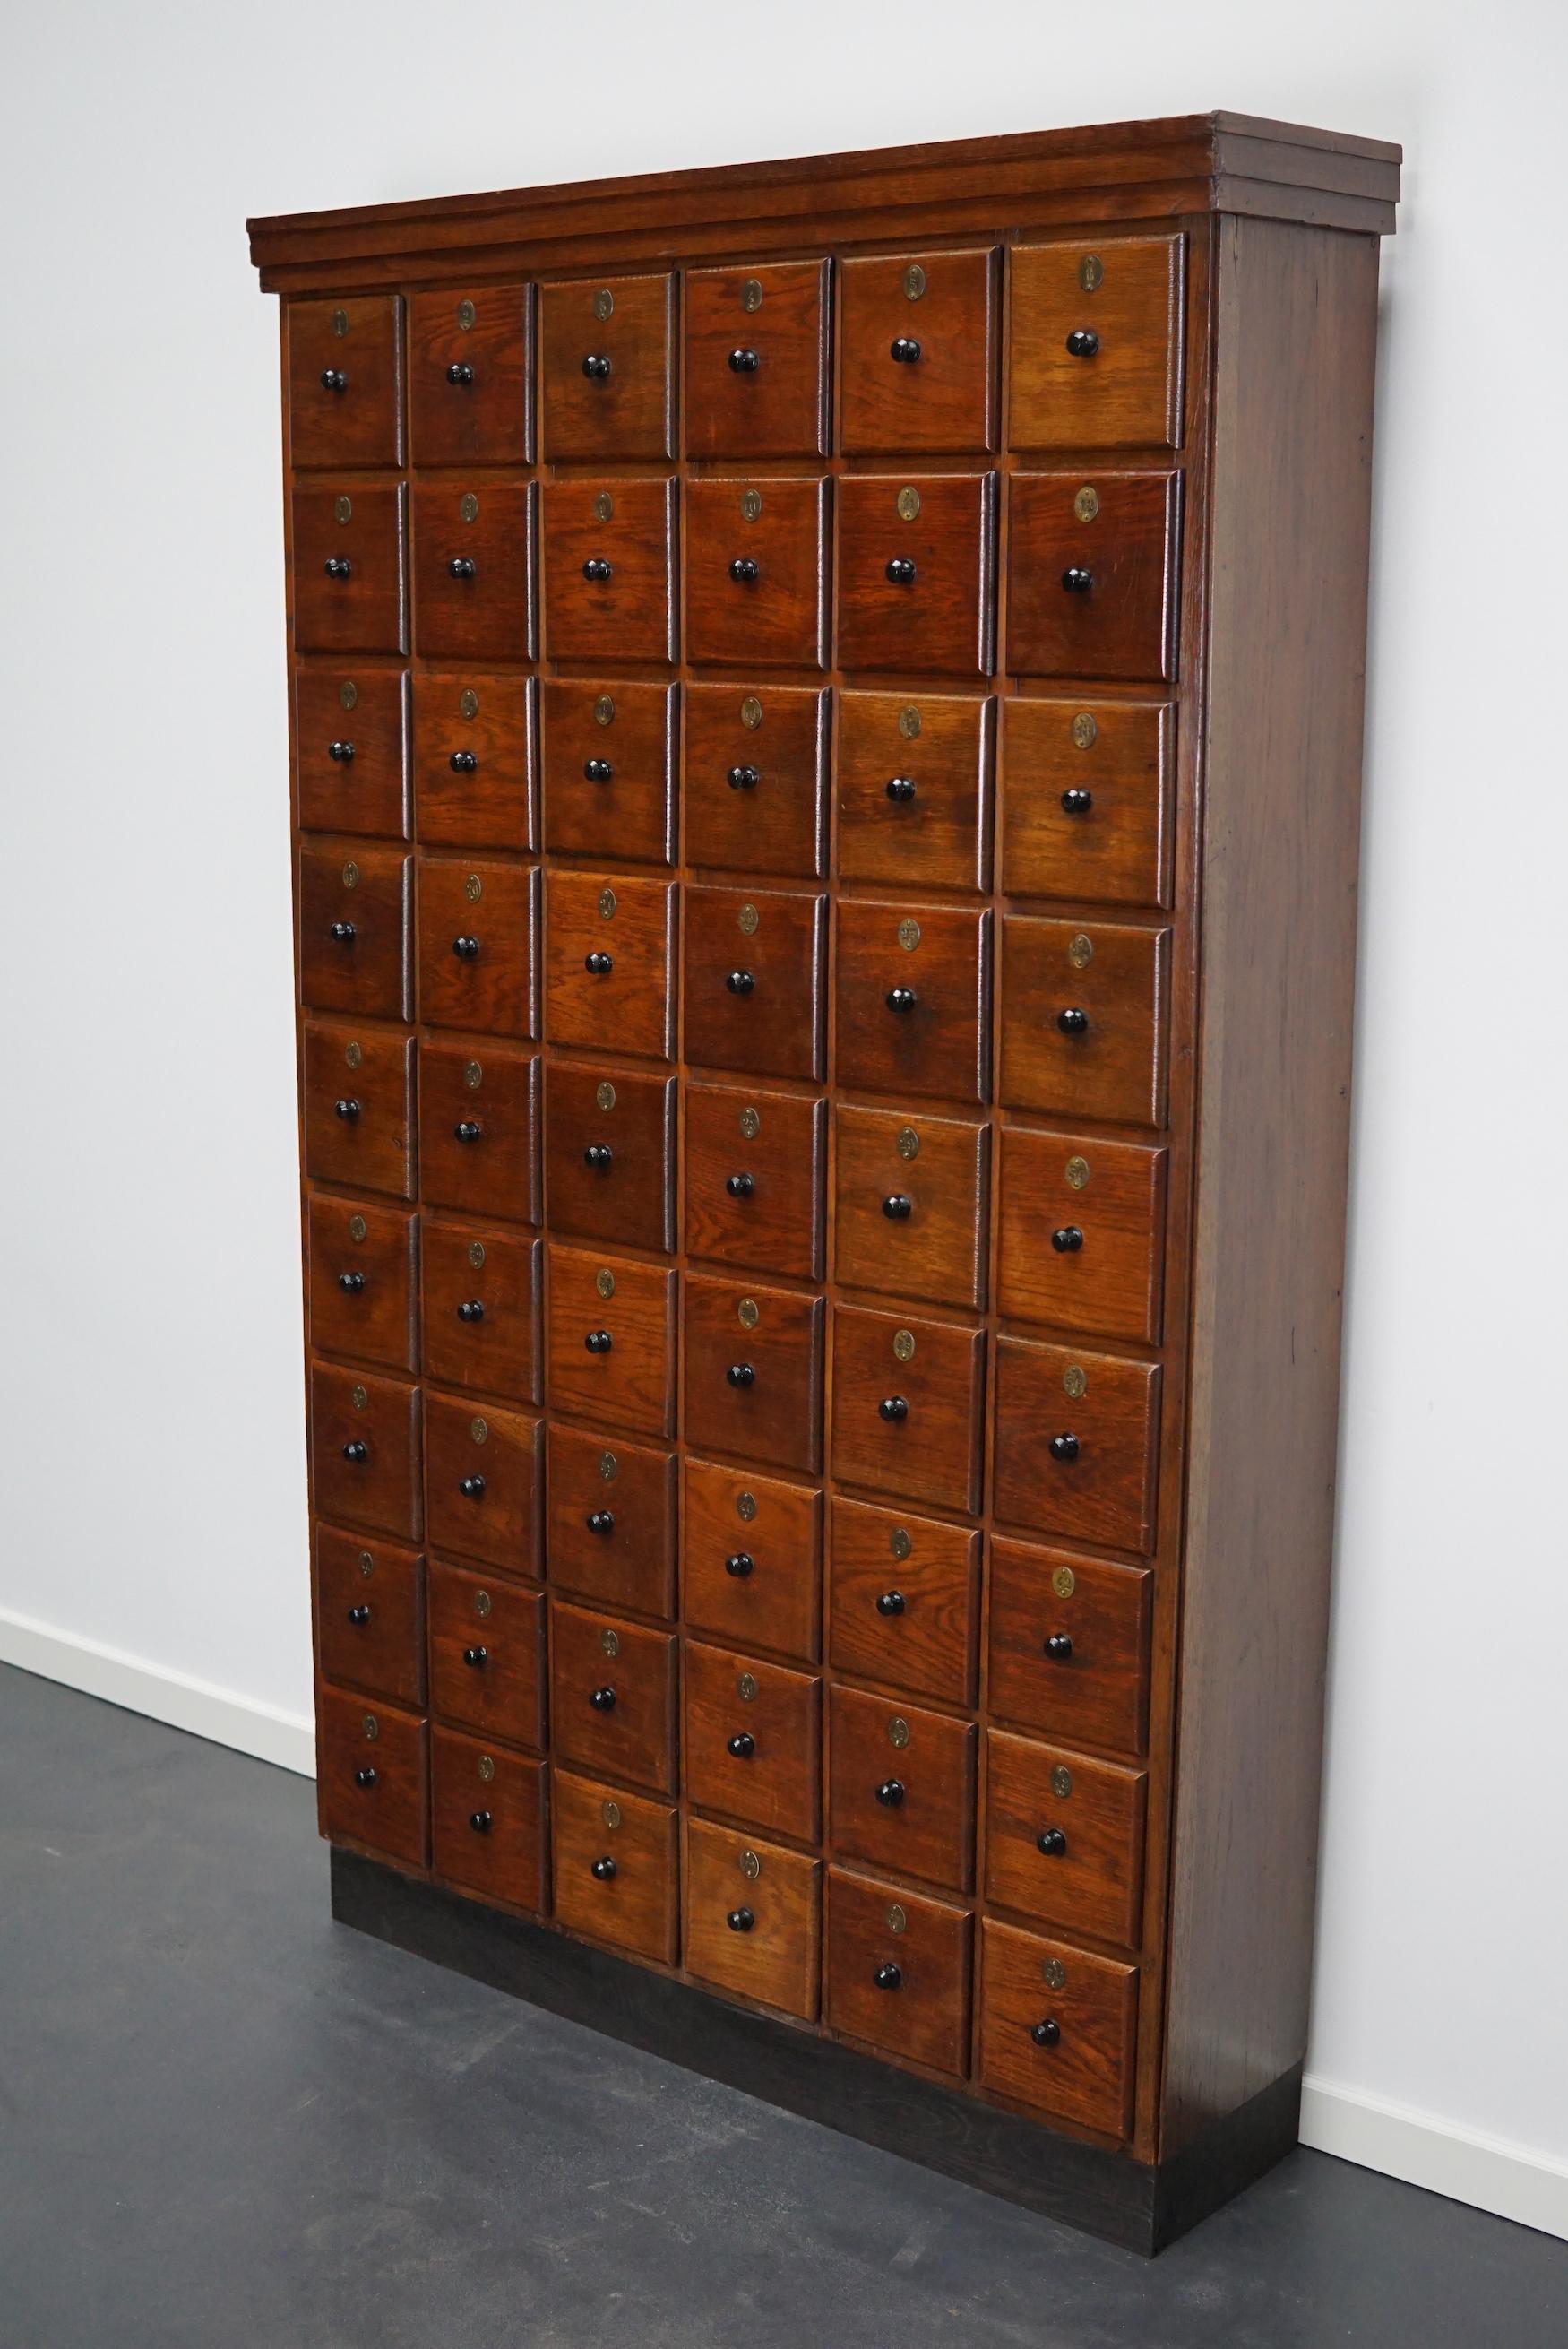 Cette armoire d'apothicaire a été fabriquée vers les années 1920 aux Pays-Bas. Il comporte 54 tiroirs avec d'étonnants boutons en bakélite et des numéros en laiton. Il a été fabriqué à l'origine pour un barbier de la région d'Amsterdam. Il était